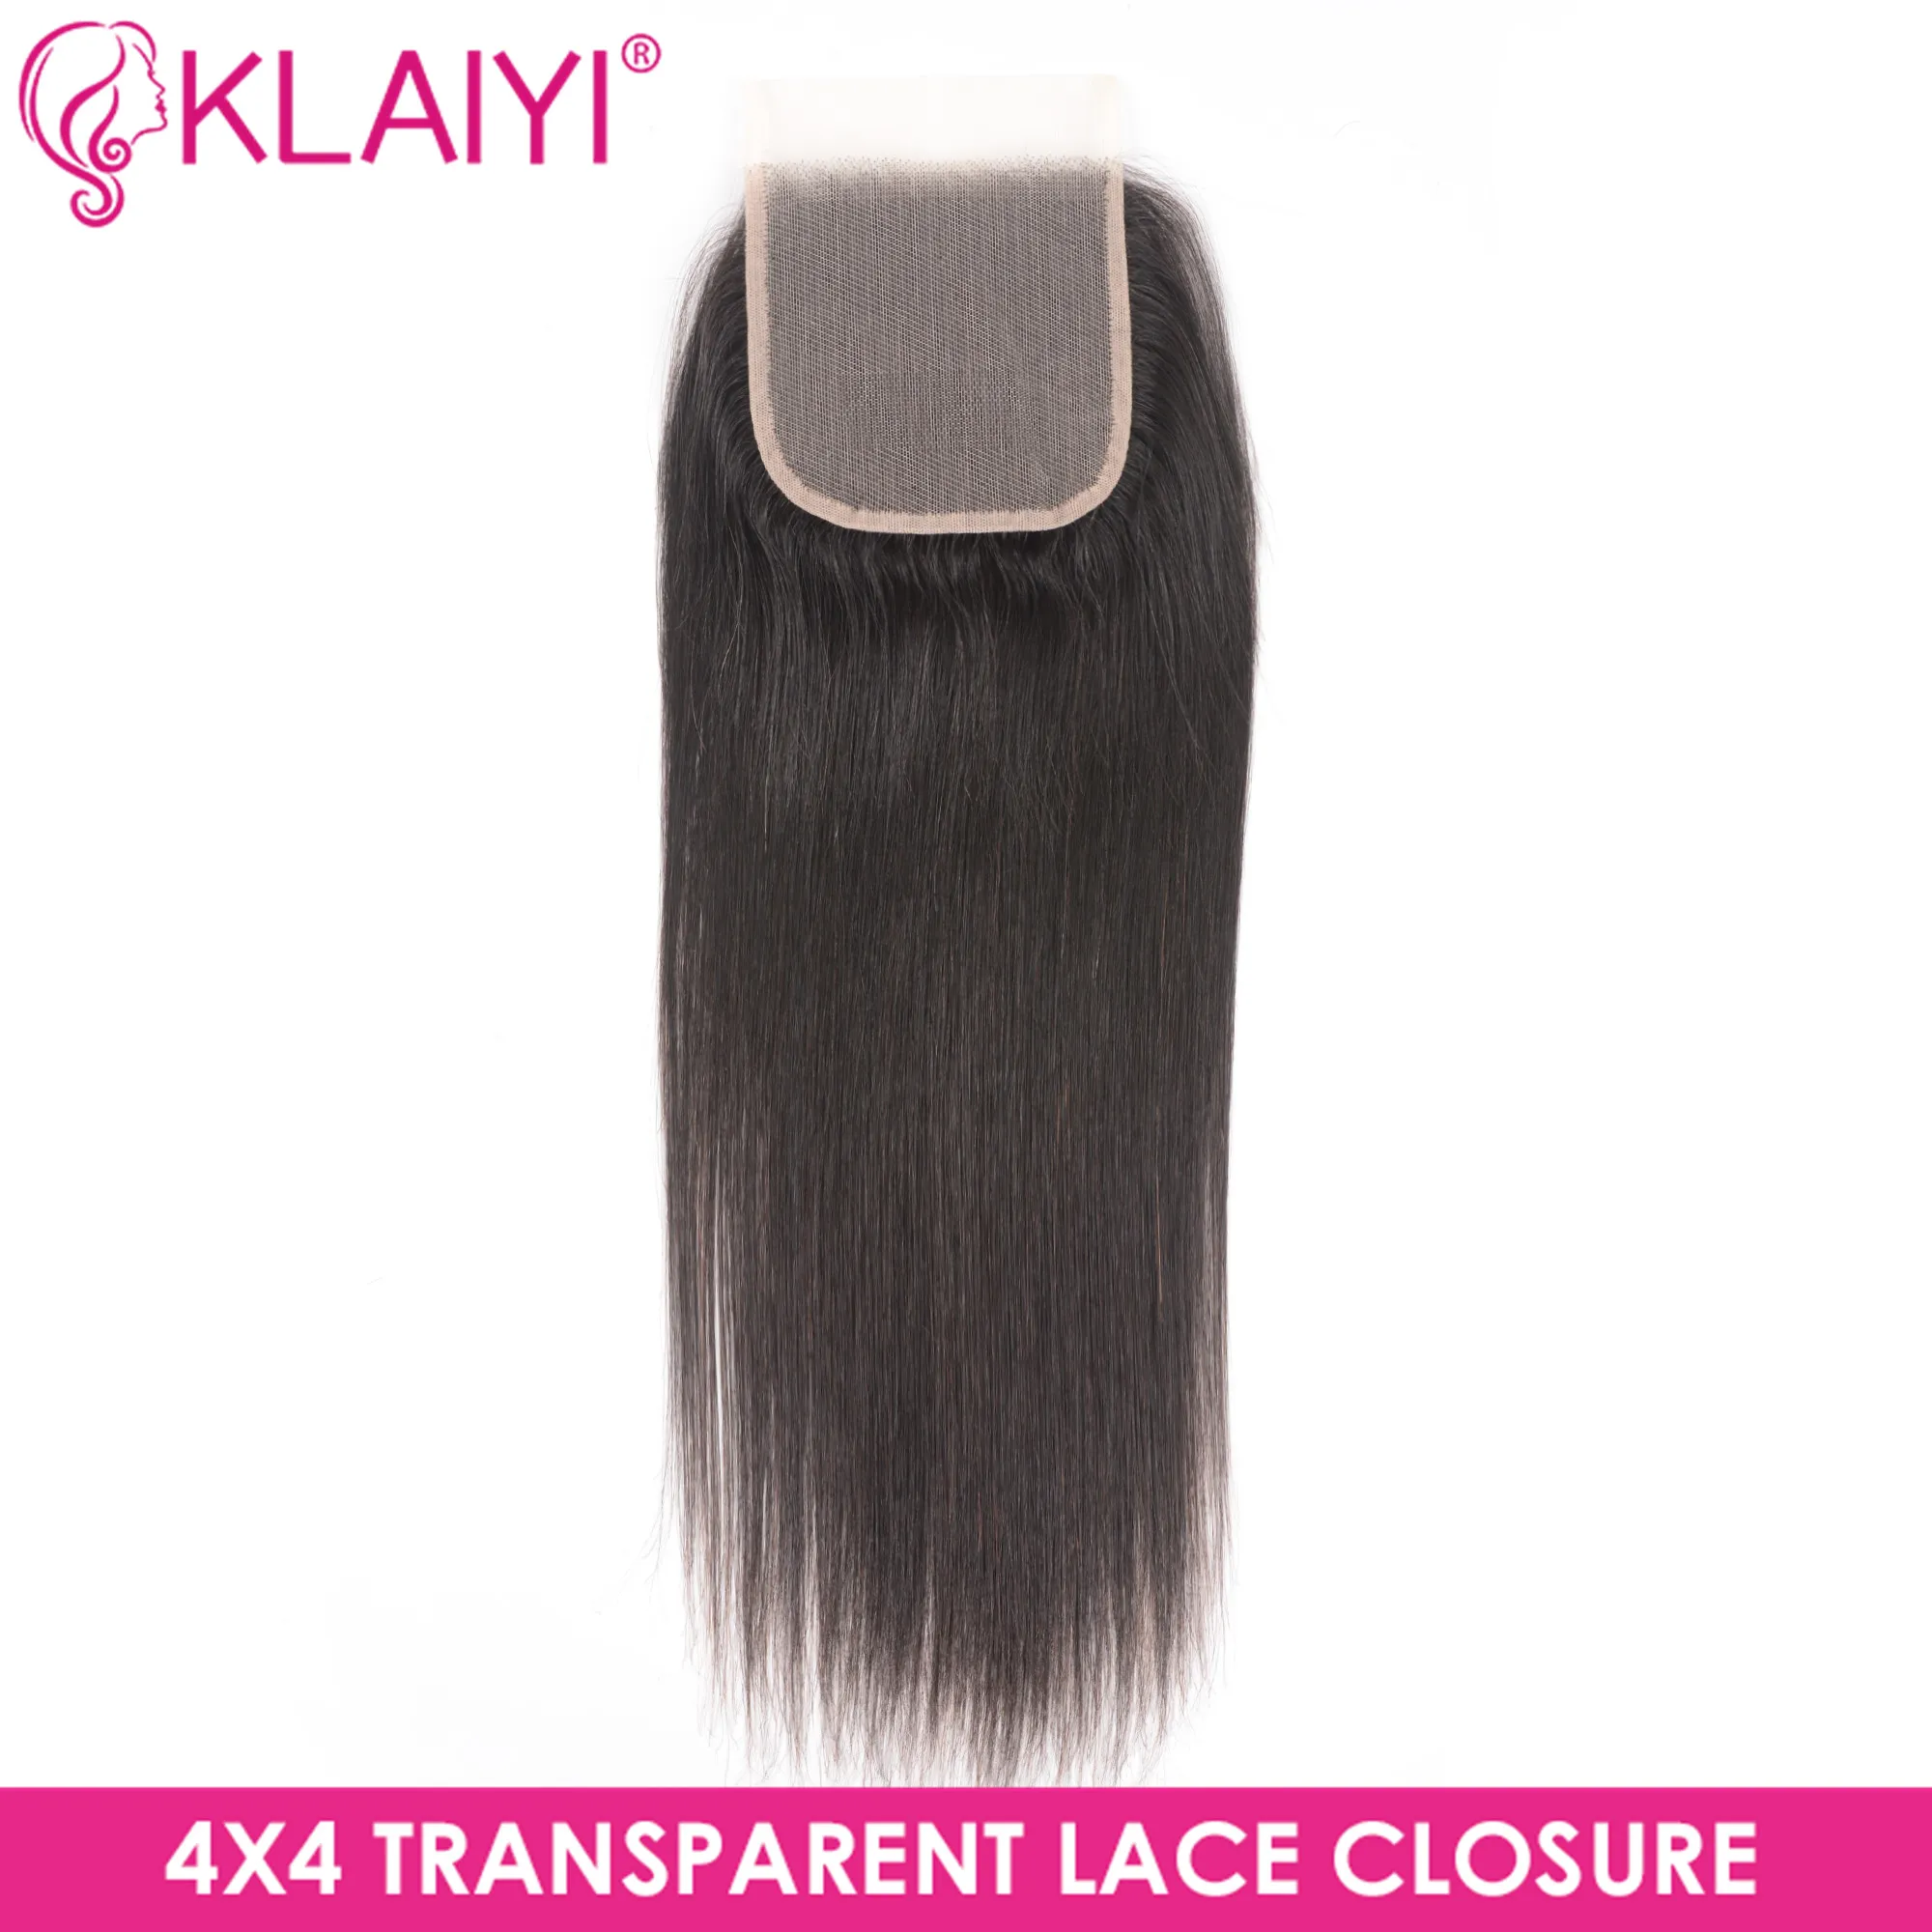 Klaiyi волосы прозрачные кружева закрытие бразильские прямые волосы remy волосы часть 4*4 мягкие швейцарские кружева натуральный цвет 10-20 дюймов